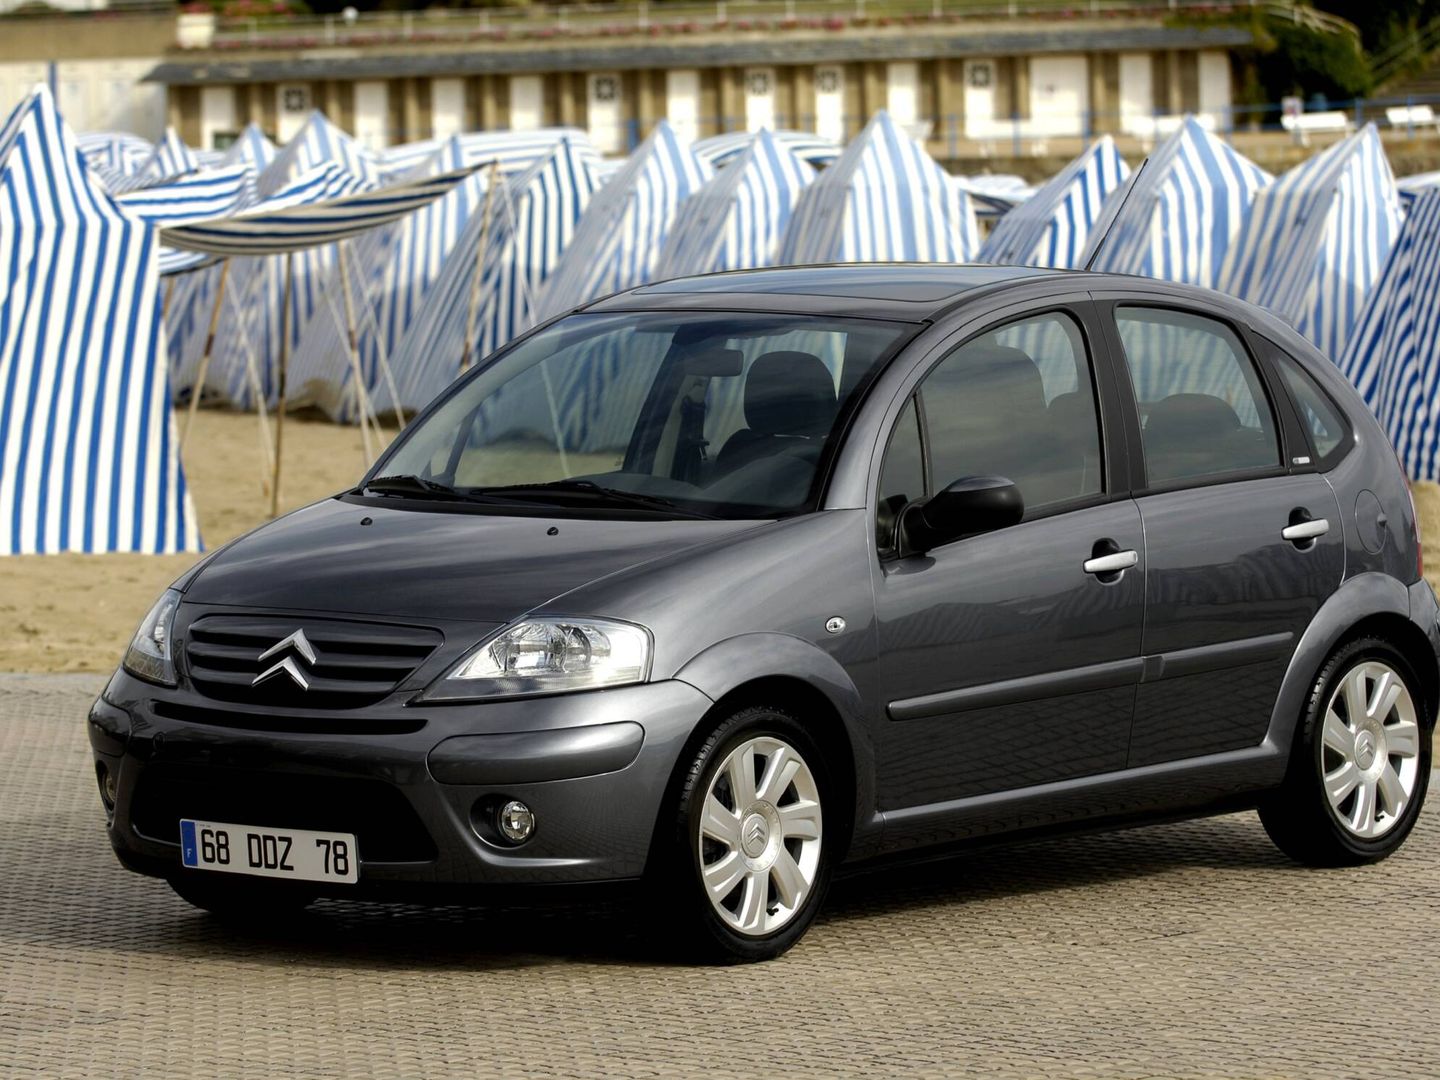 Citroën presentó la primera generación del C3 en 2001.